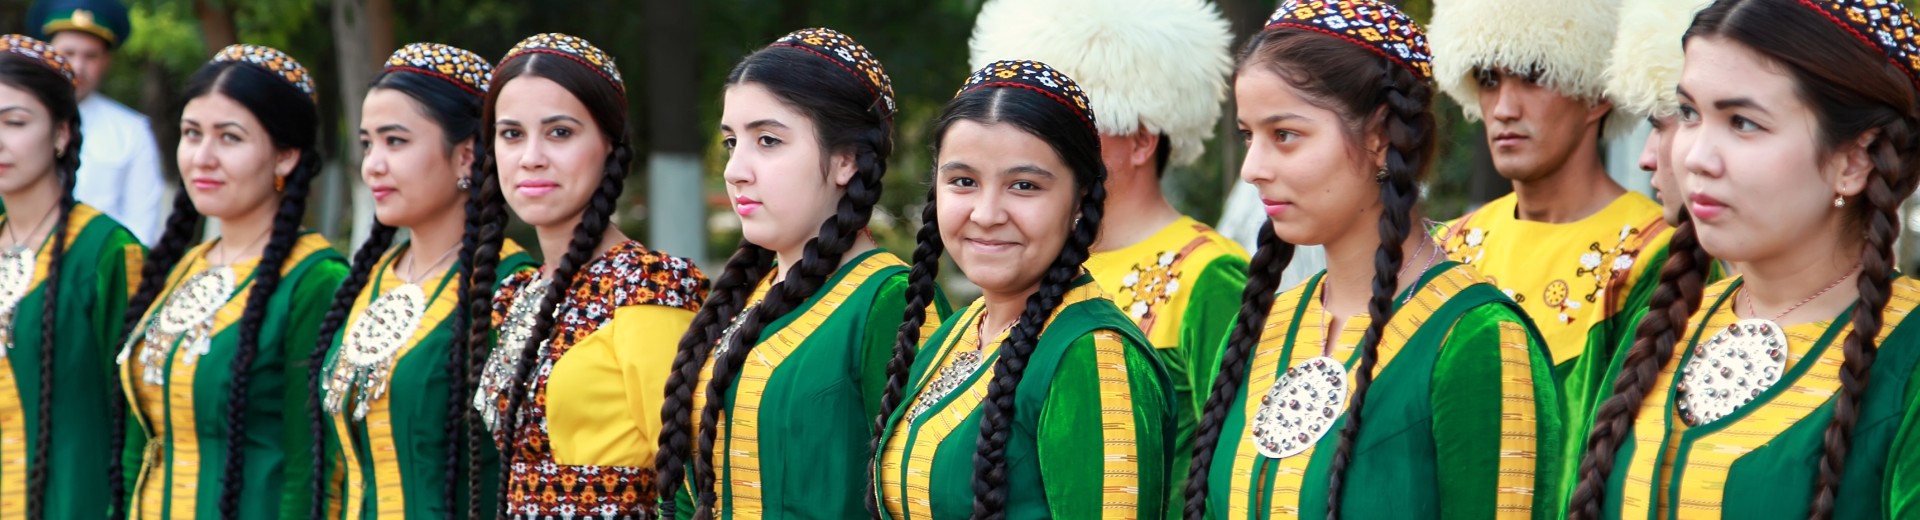 Reizen naar Turkmenistan